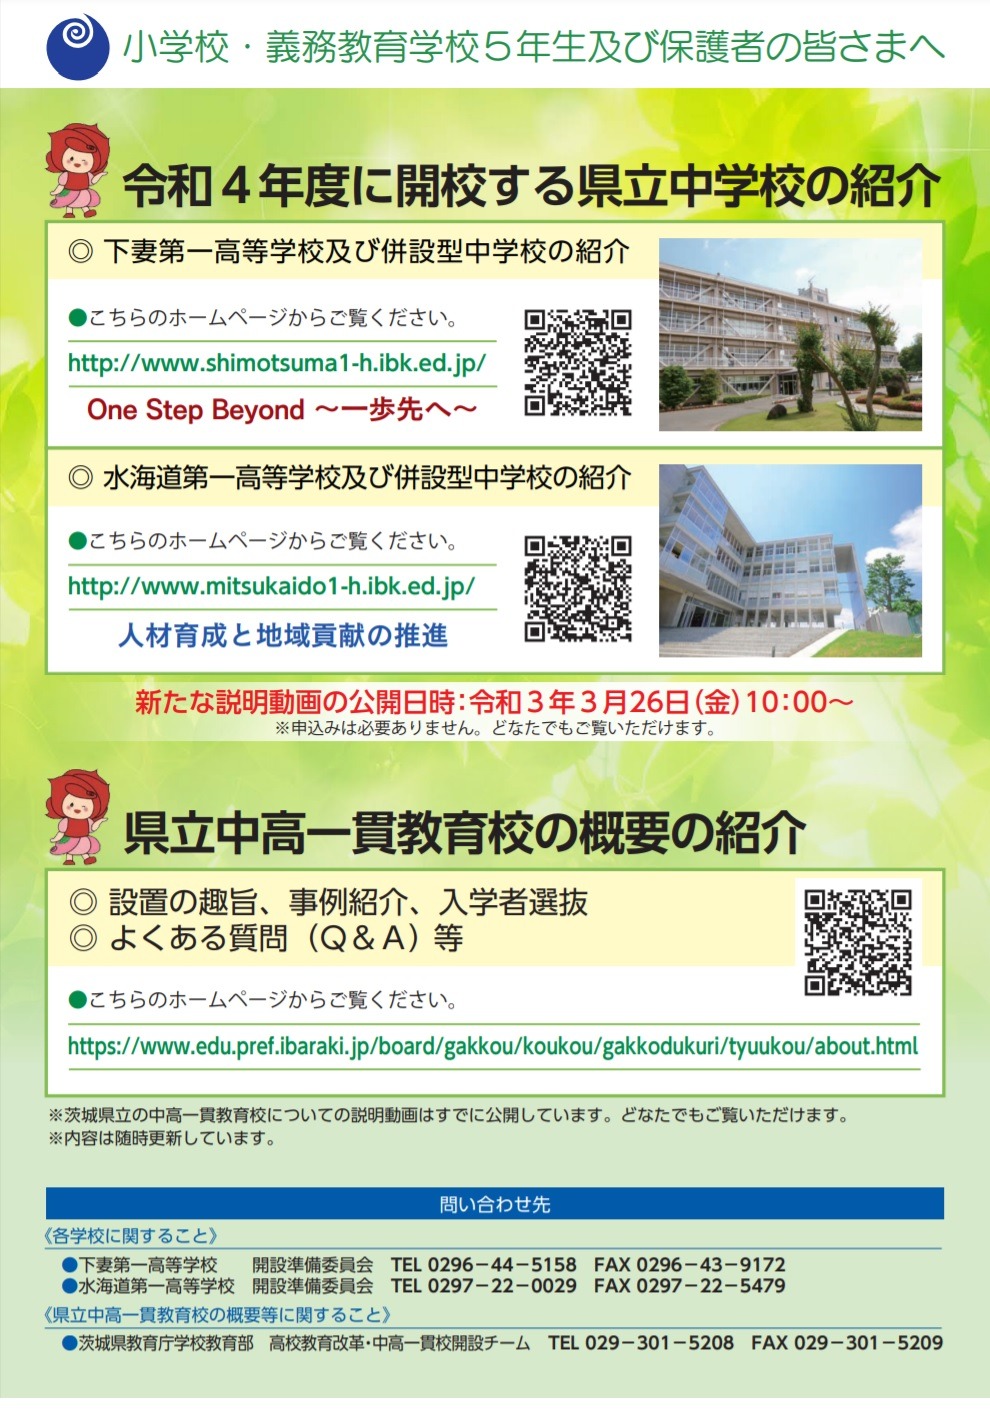 中学受験22 茨城県立中2校が開校へ 説明動画公開 リセマム